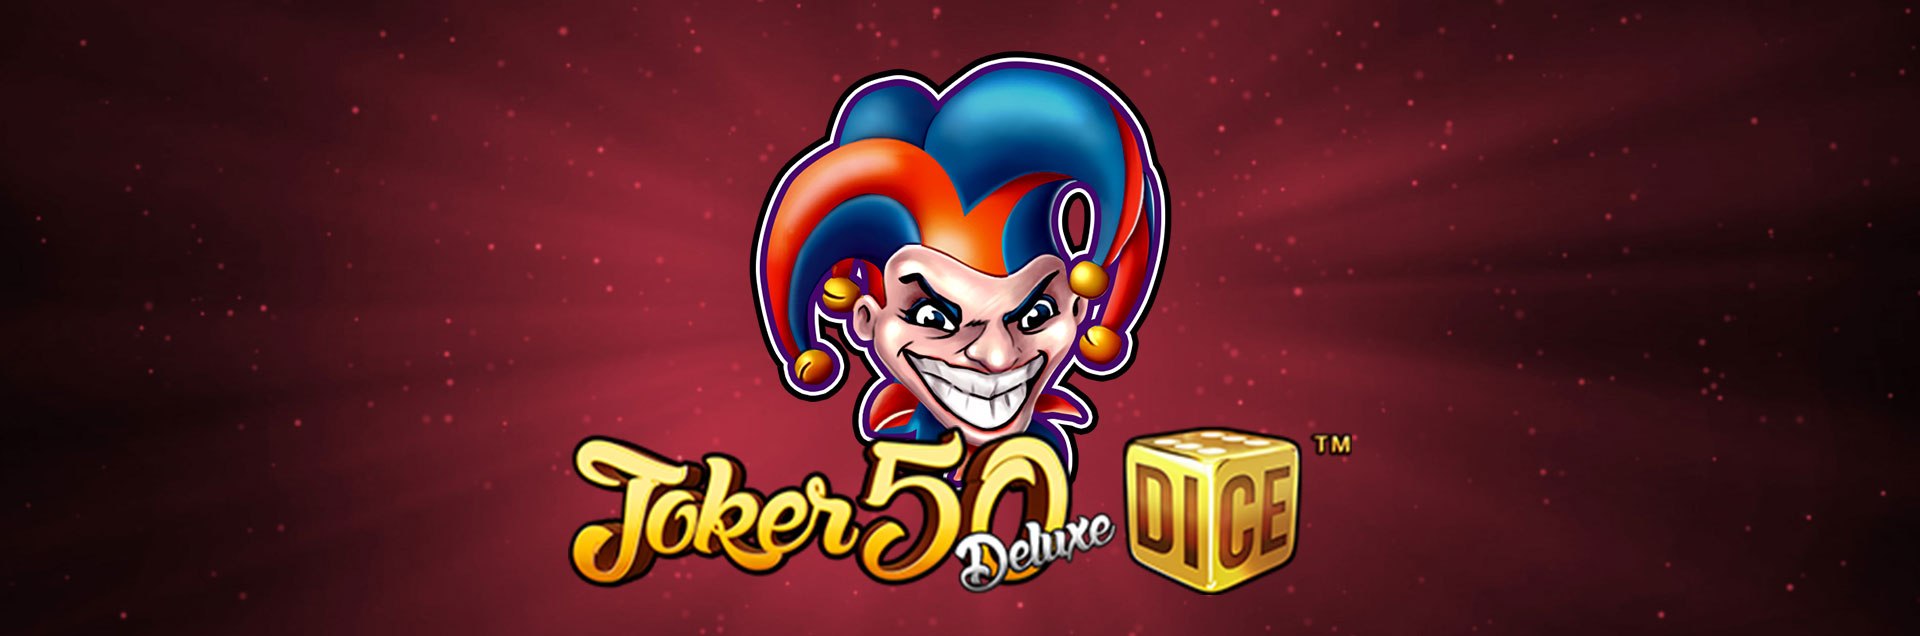 Joker 50 Deluxe Dice header games